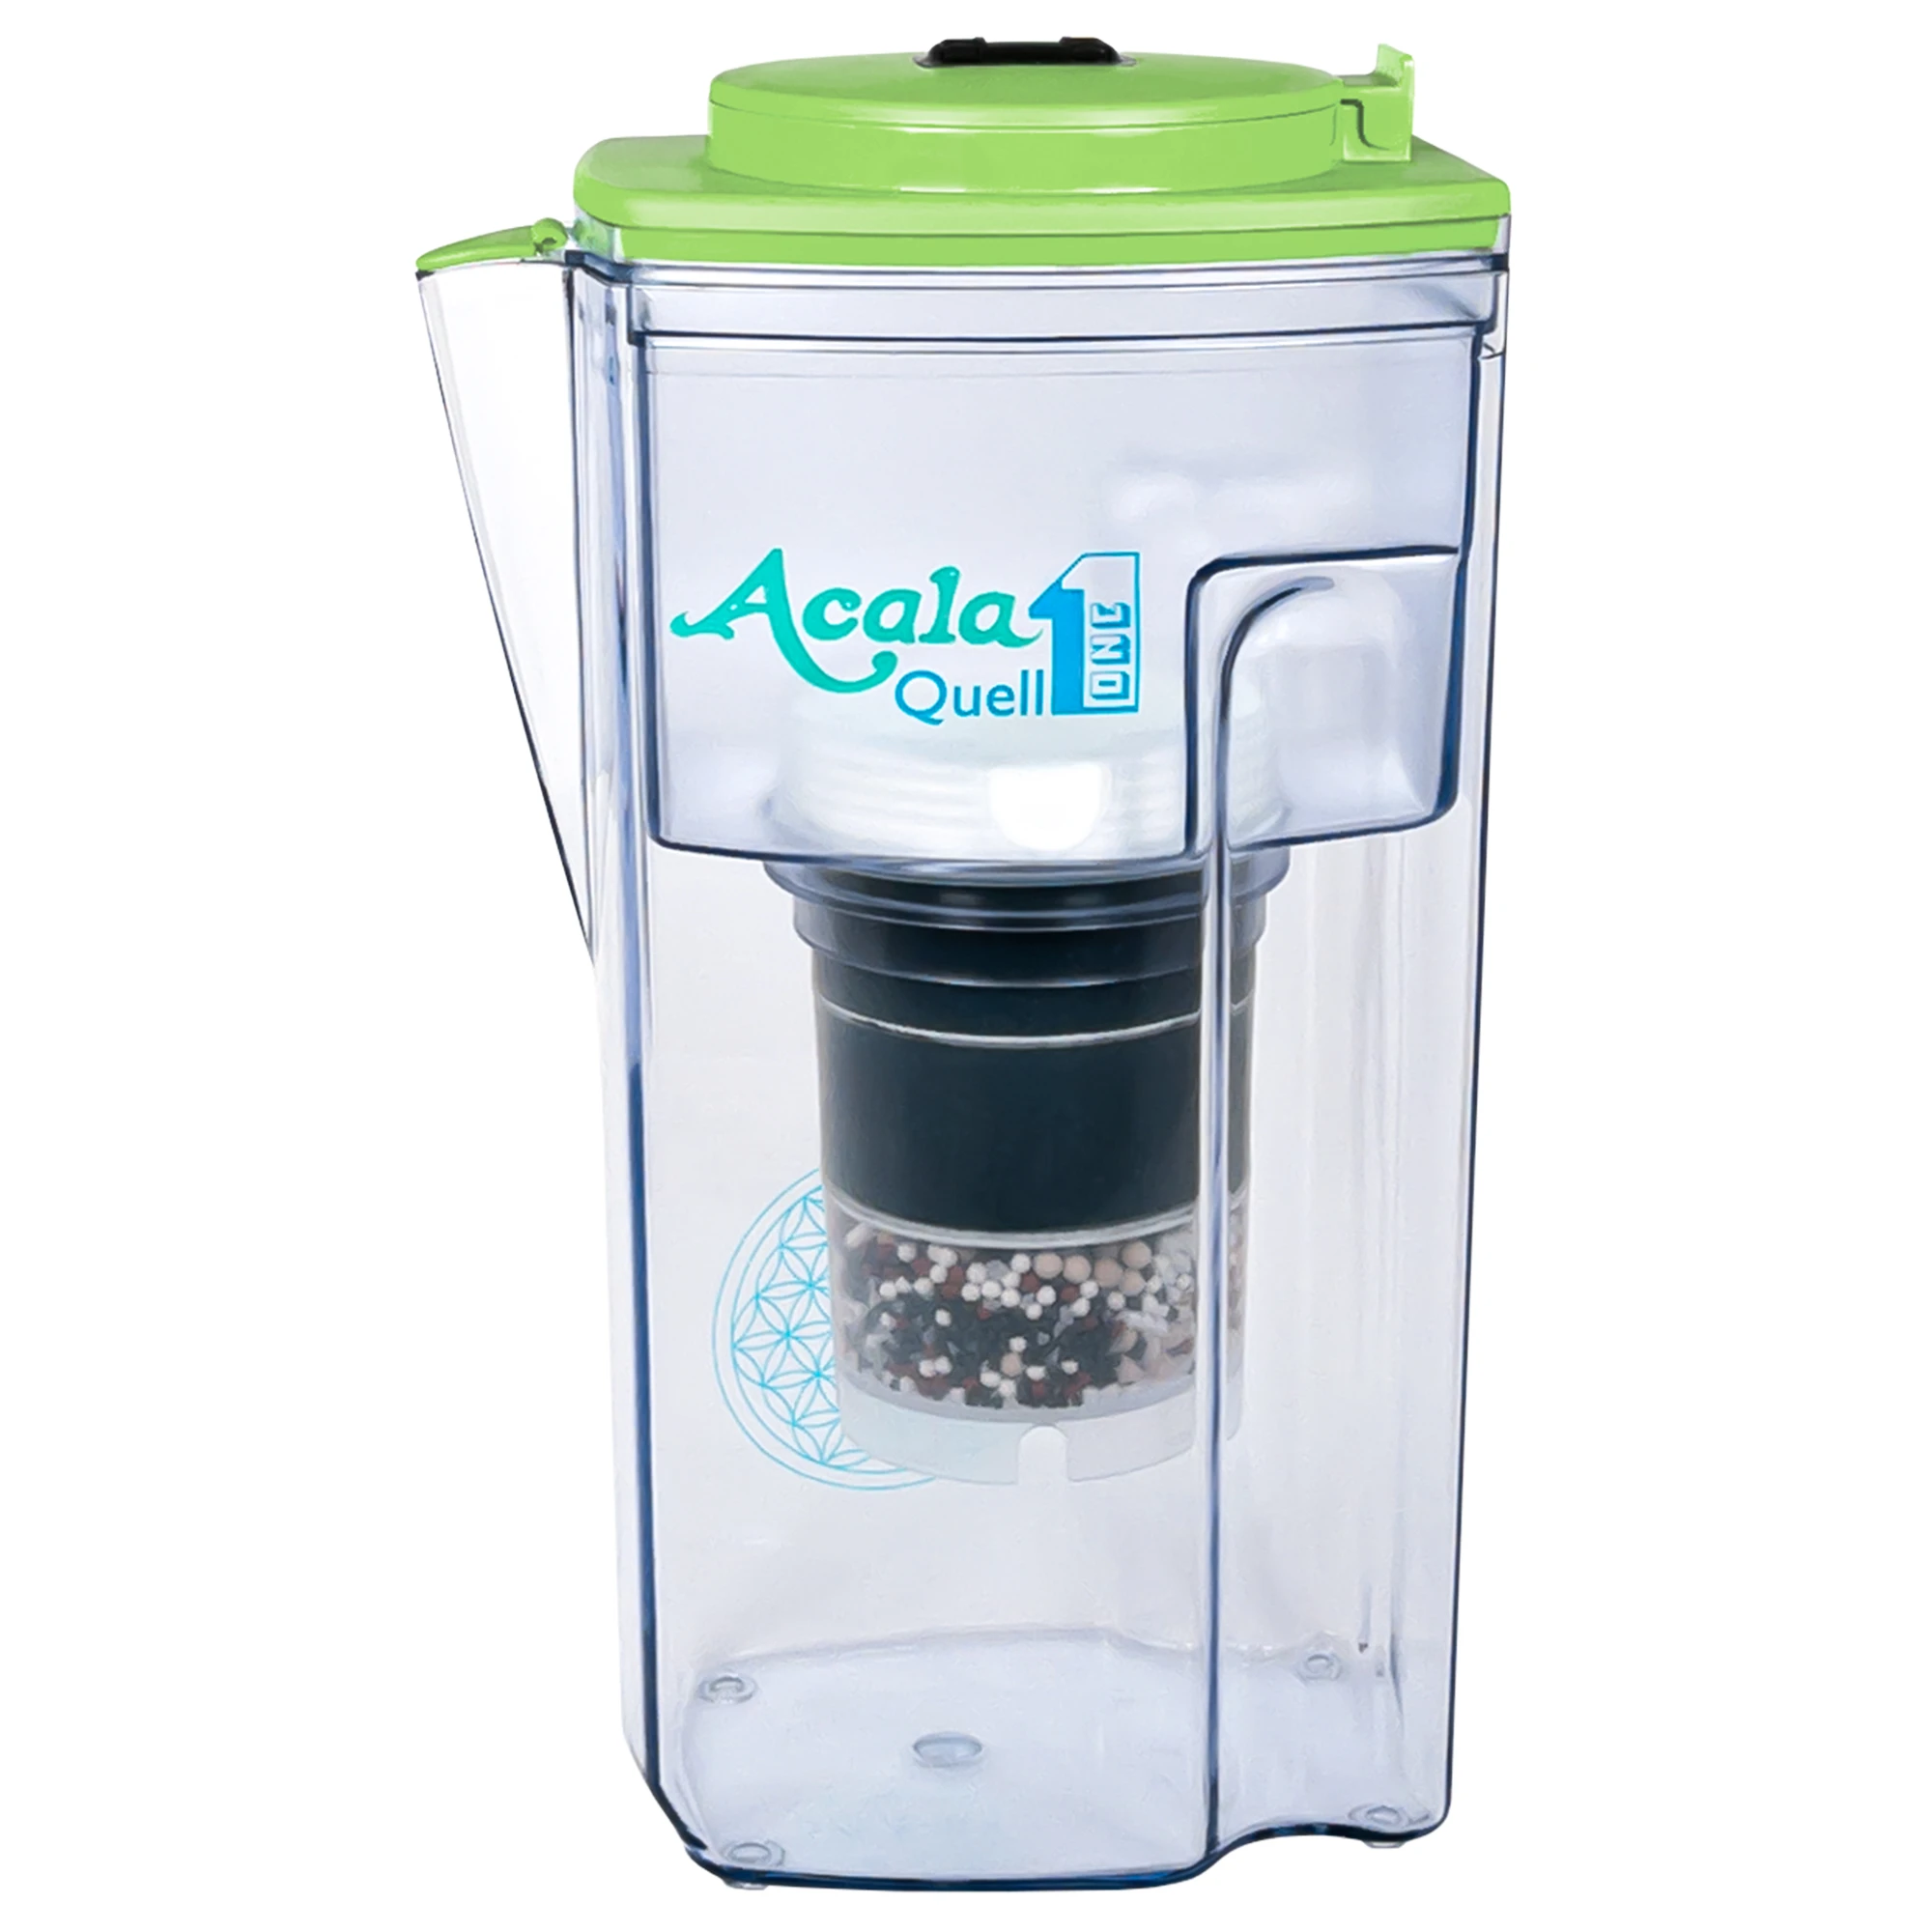 Zu sehen ist der Acala Kannen Wasserfilter ONE inklusive einer Filterkartusche und einem Mikroschwamm mit Deckel in grün vor weißem Hintergrund. Man schaut frontal auf den Filter und sieht den Aufdruck AcalaQuell1.